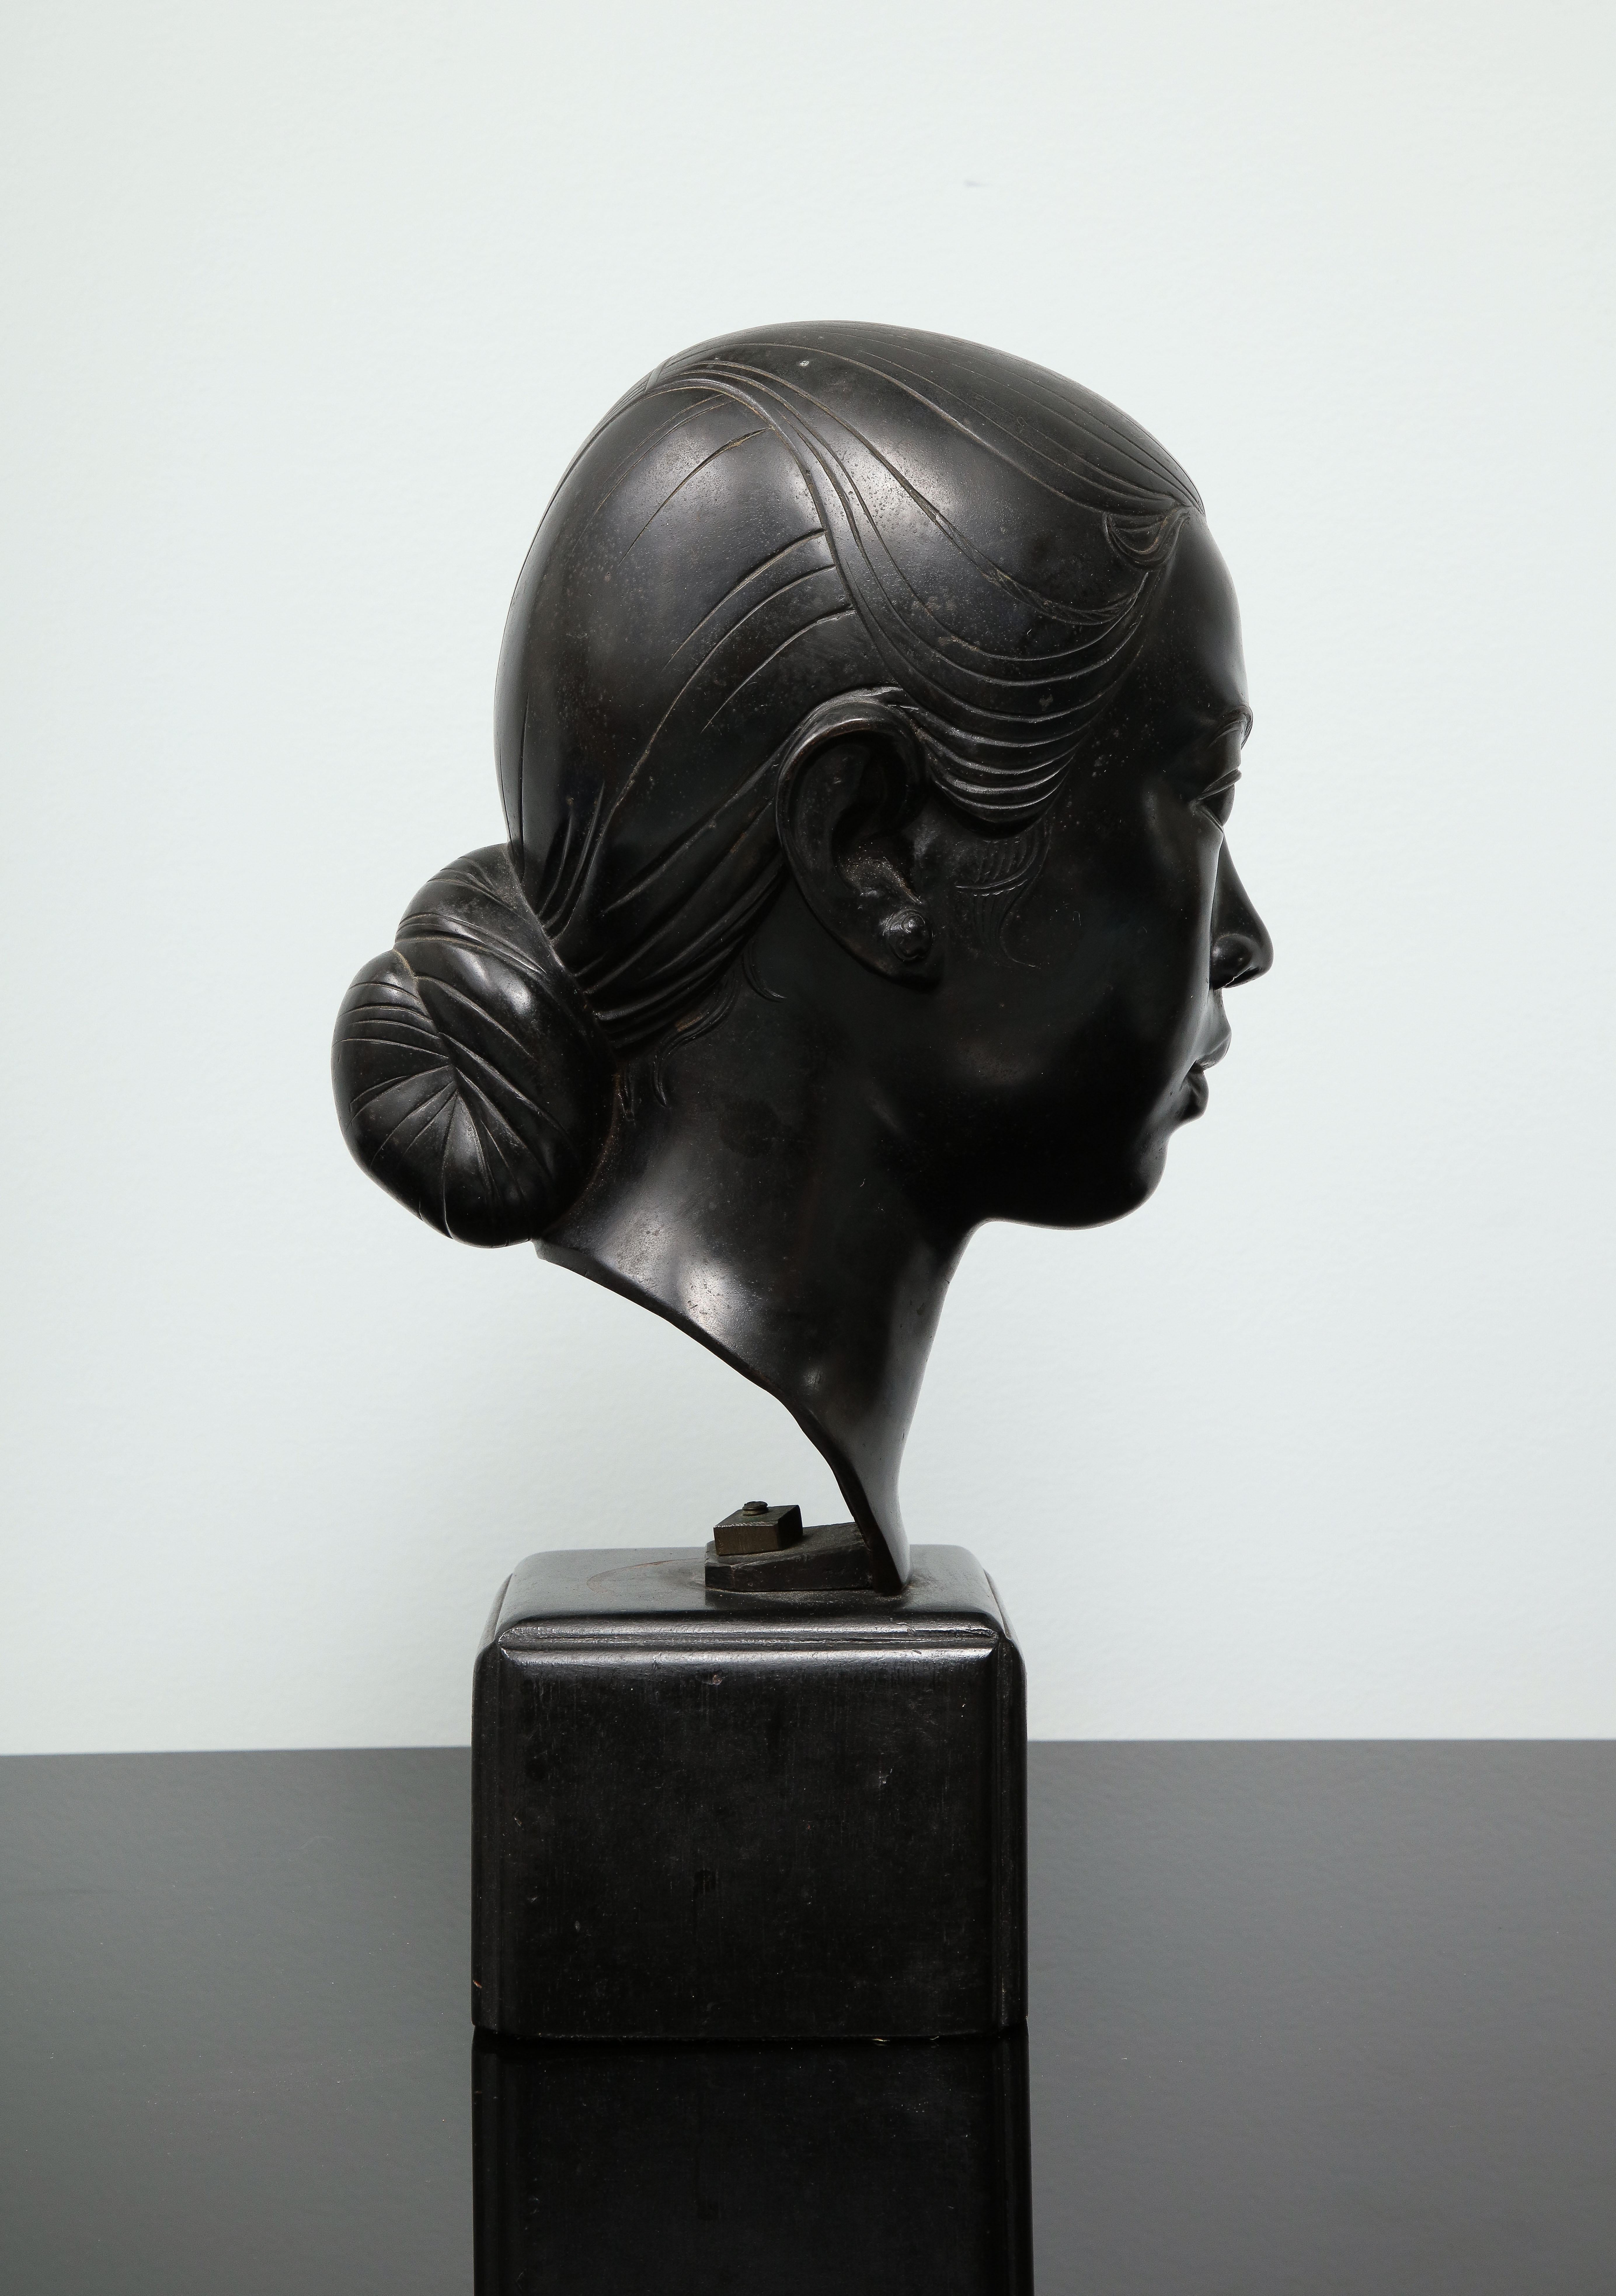 Le Van Mau (1917-2003) war ein vietnamesischer Bildhauer. Es handelt sich um eine schwarz patinierte Bronze auf dem originalen hölzernen Würfelsockel. Es ist auf der Rückseite des Halses in chinesischen Schriftzeichen signiert. Es stammt aus den